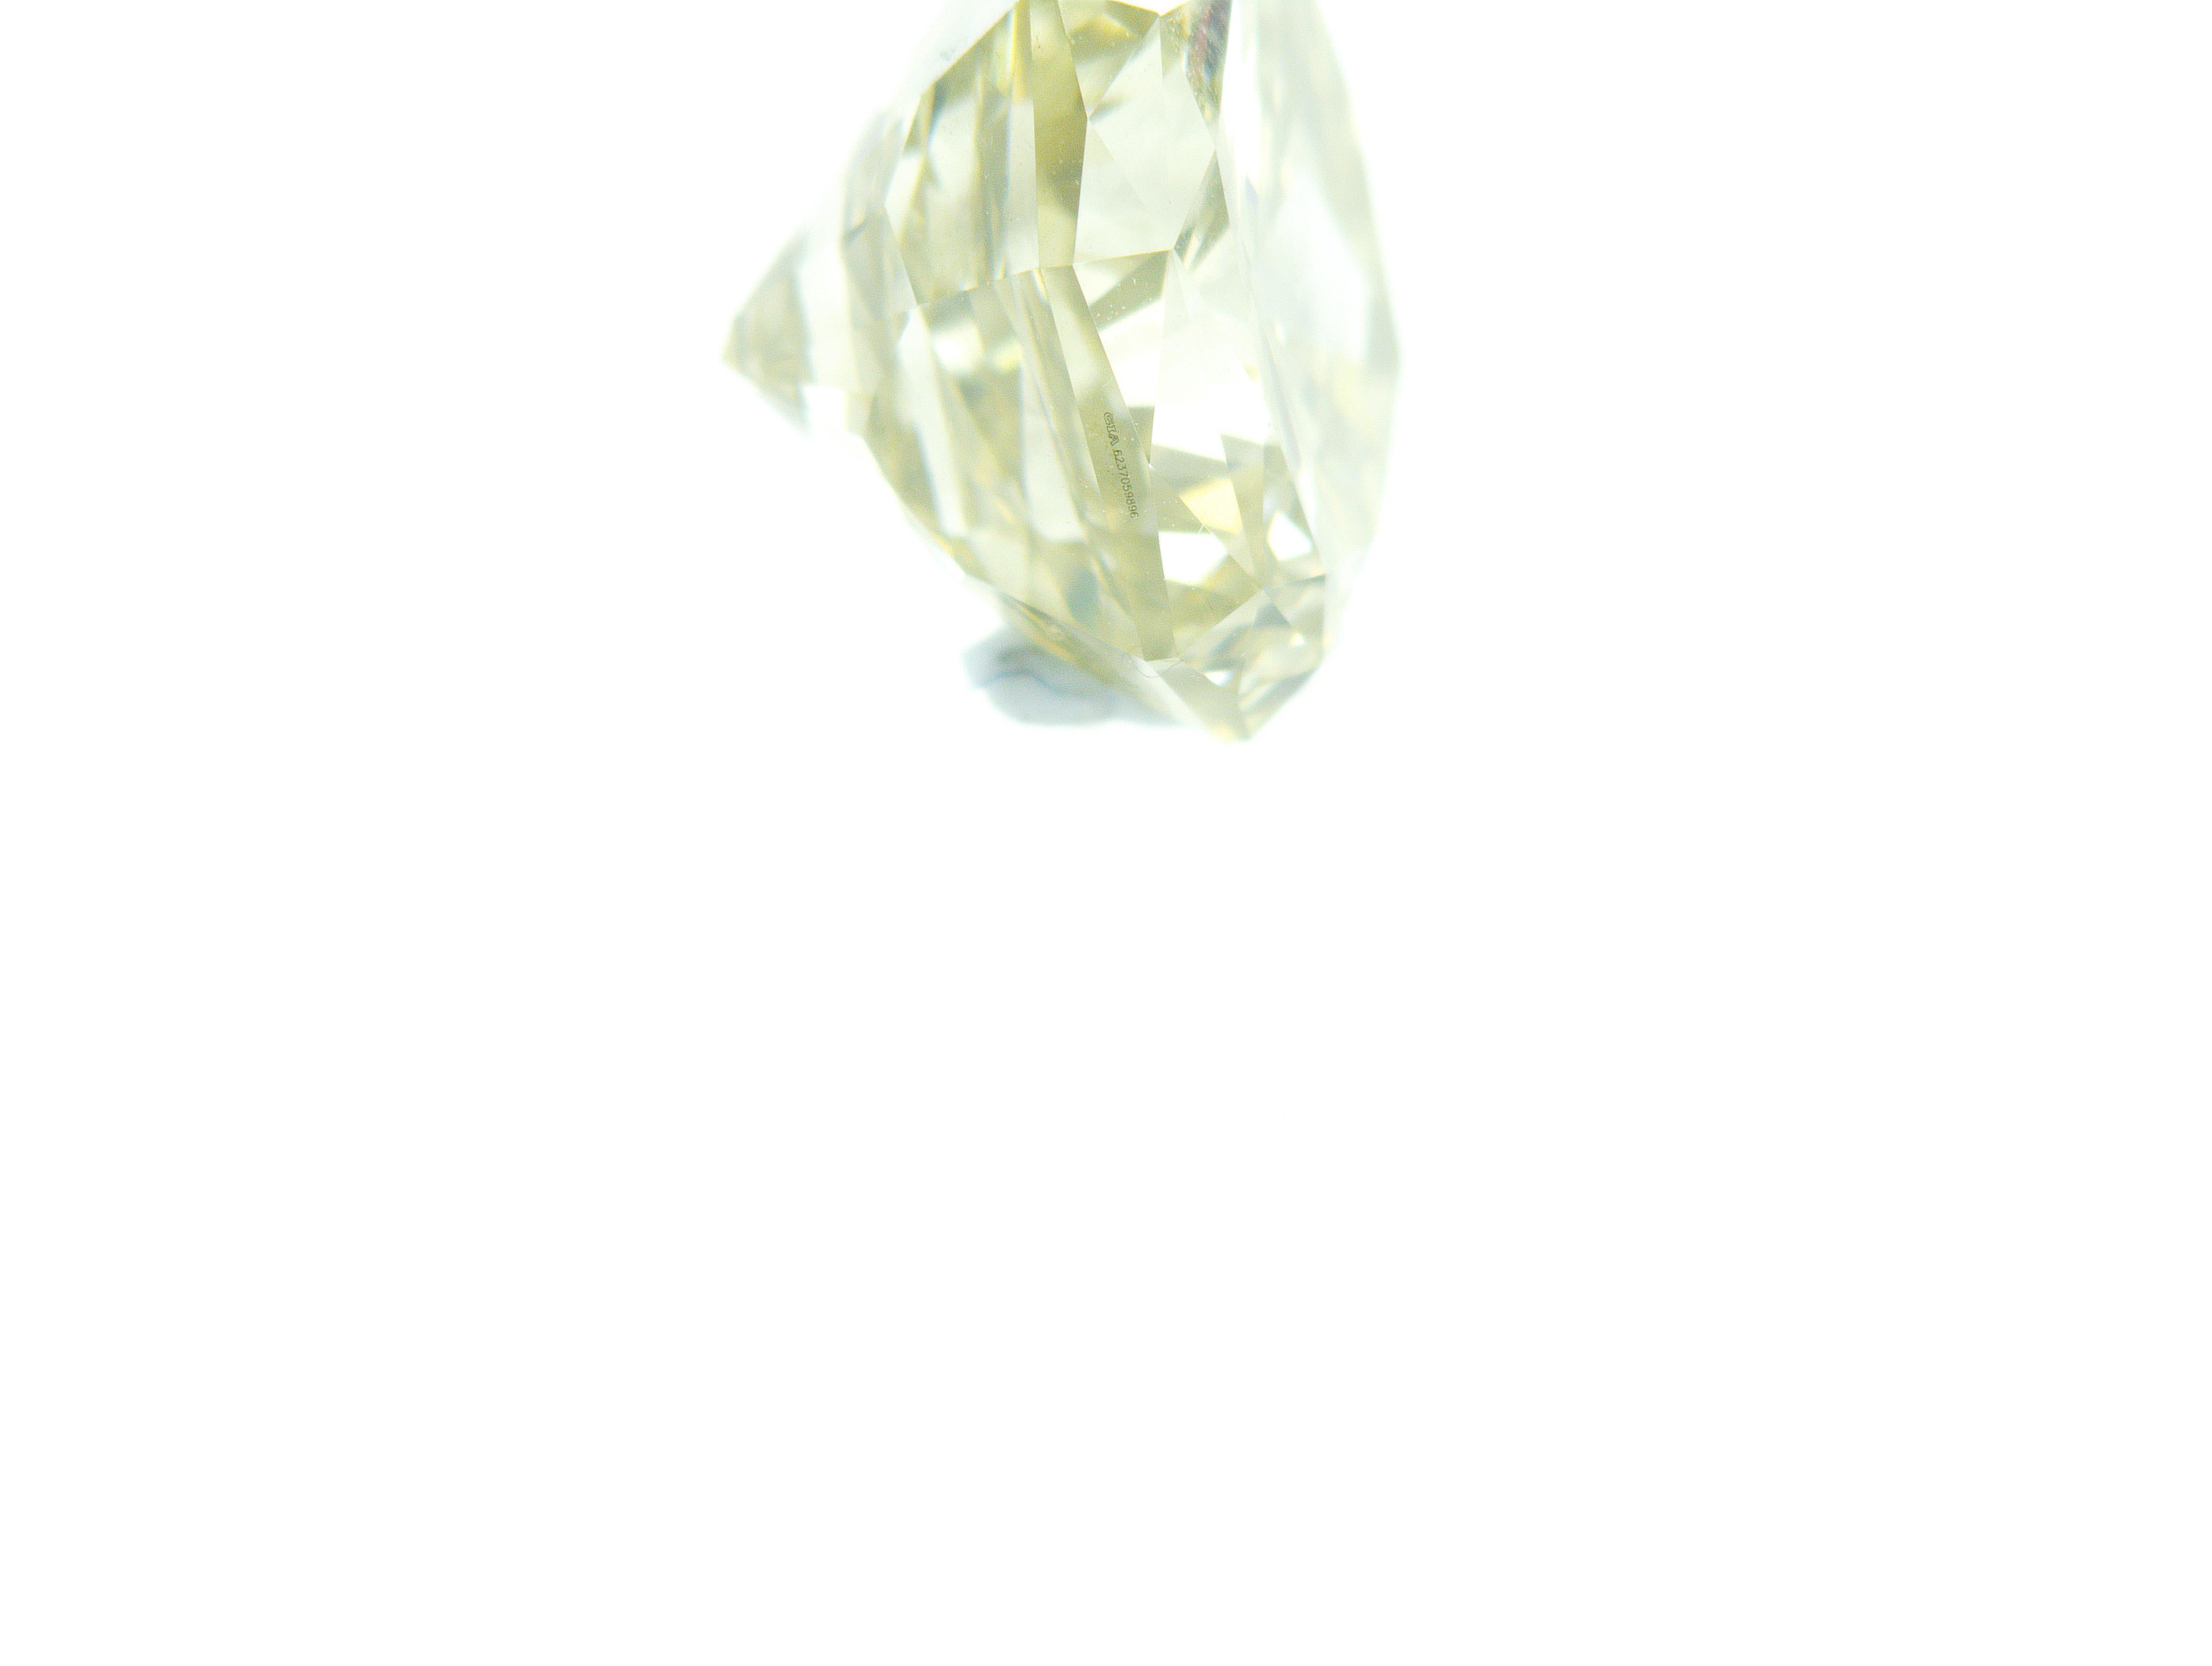 Dieser absolut einzigartige Fancy Dark Greenish Gray Diamant wurde von GIA zertifiziert. Dieser Diamant wurde in unseren Einrichtungen in Dubai geschliffen und poliert. Die grobe Quelle ist eine Republik Guinea. Dieser Diamant hat eine hervorragende